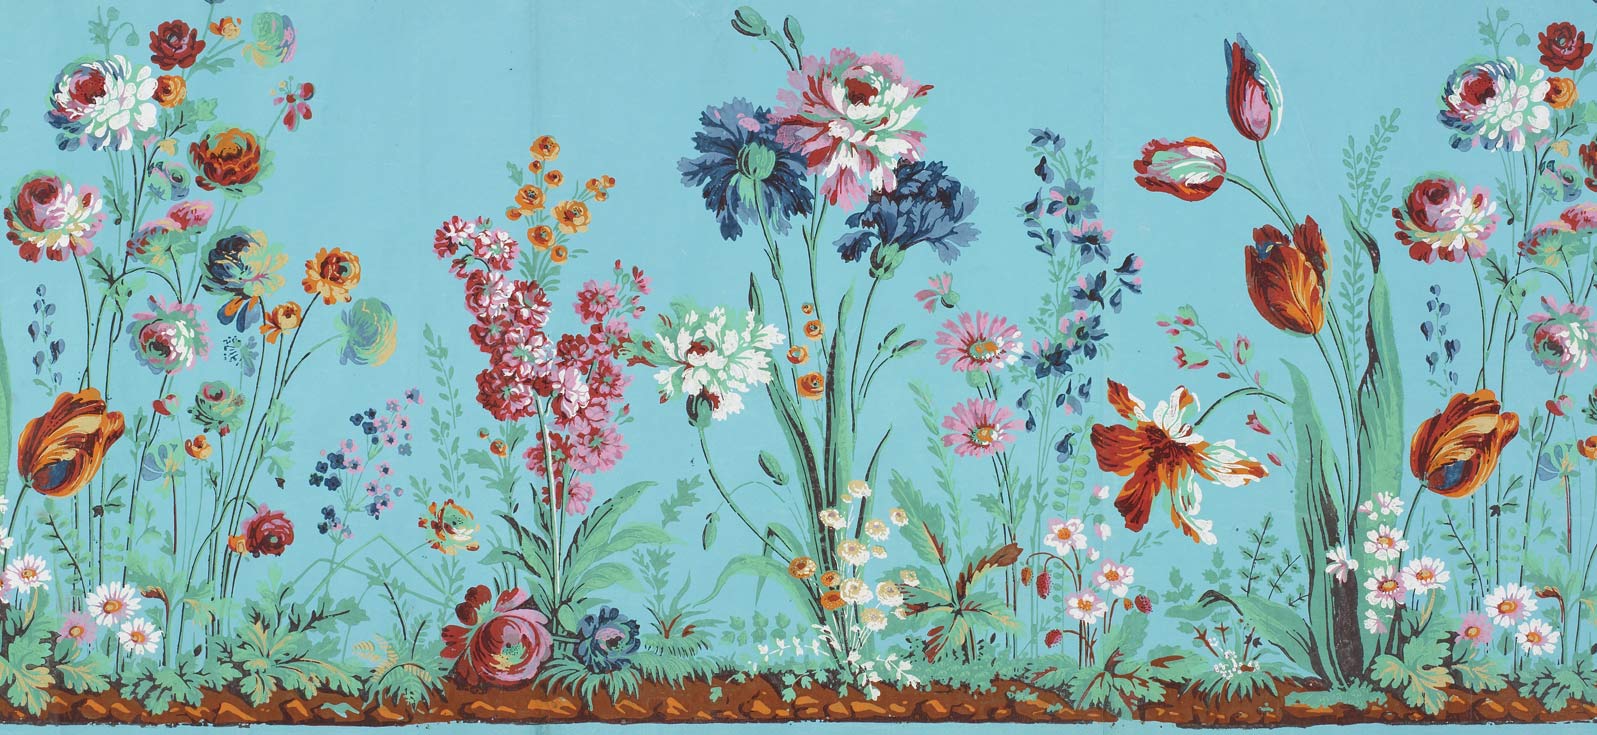 papier peint d'art mural,fleur,plante,fleurs sauvages,art floral,textile